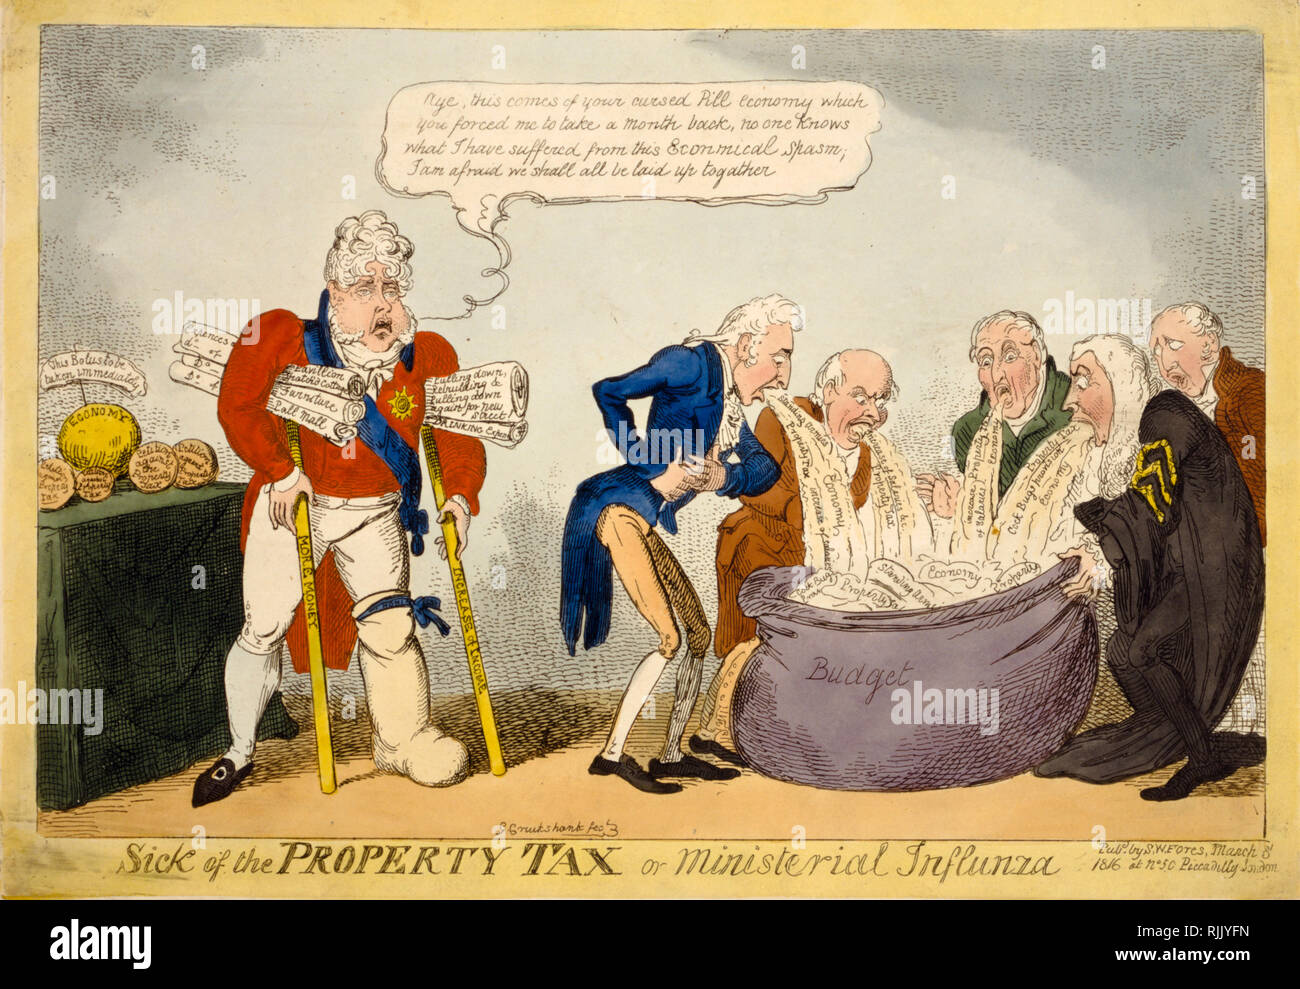 Politico britannico Cartoon - George Cruikshank 1816 - 'Sick della proprietà fiscale o influnza ministeriale (sic)" - politica Foto Stock